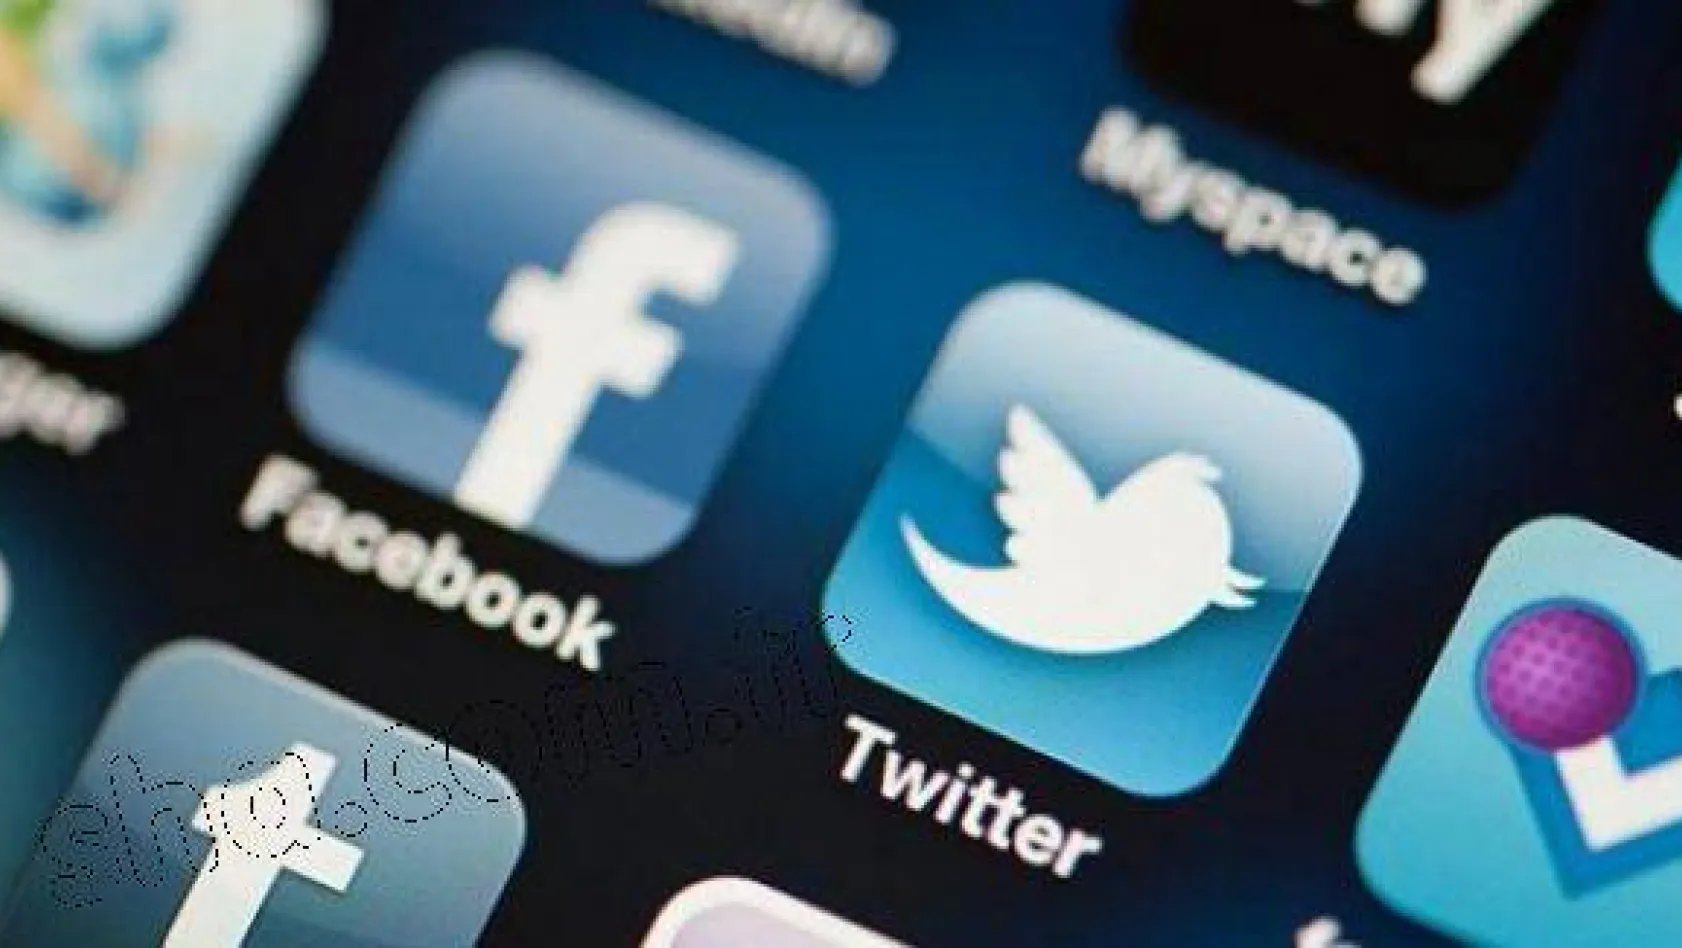 Sosyal medyanın 3 dev adresine Zeytin Dalı uyarısı